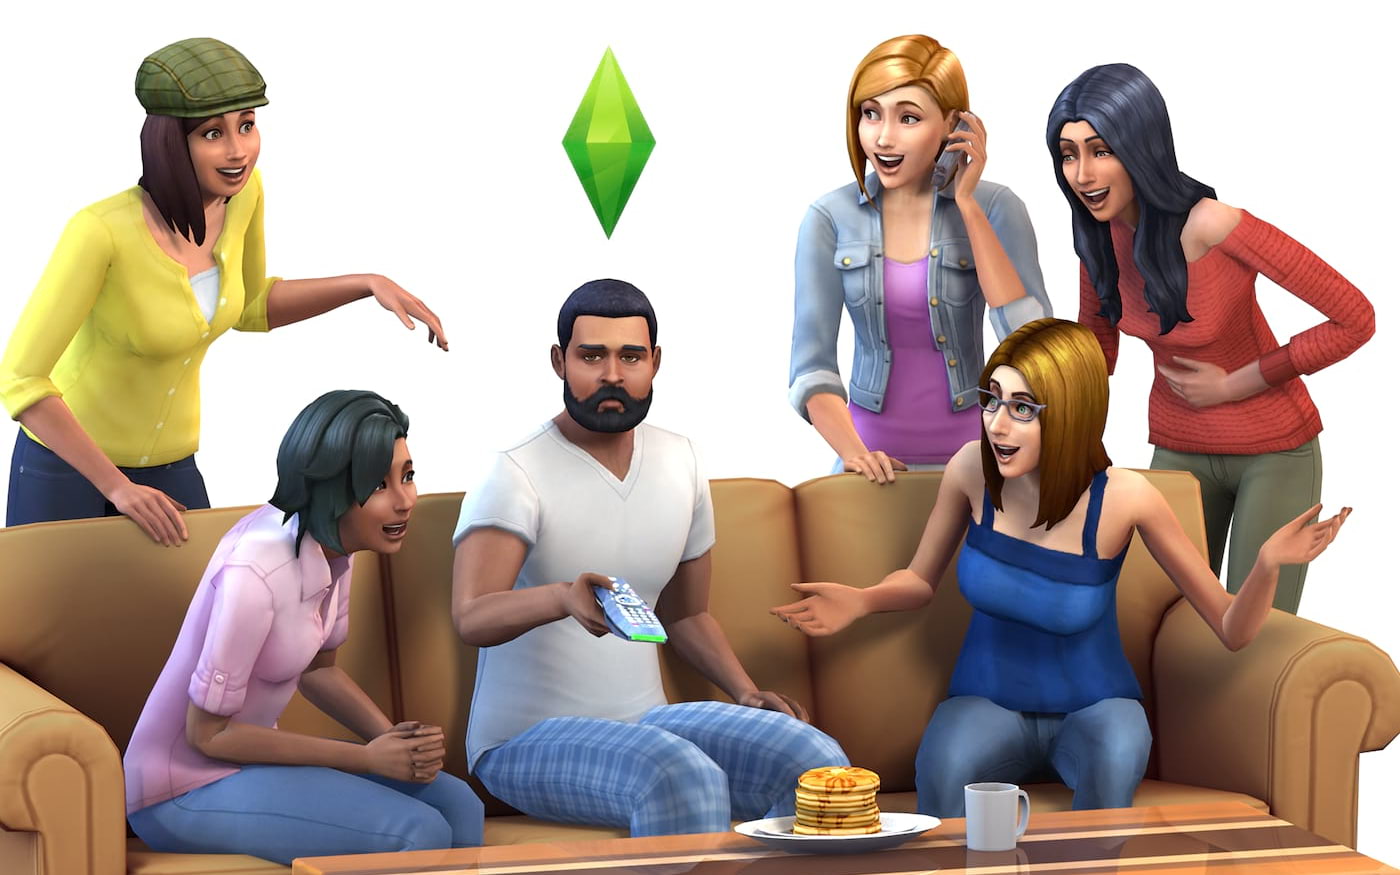 The Sims 4 é disponibilizado gratuitamente na Origin; veja como baixar